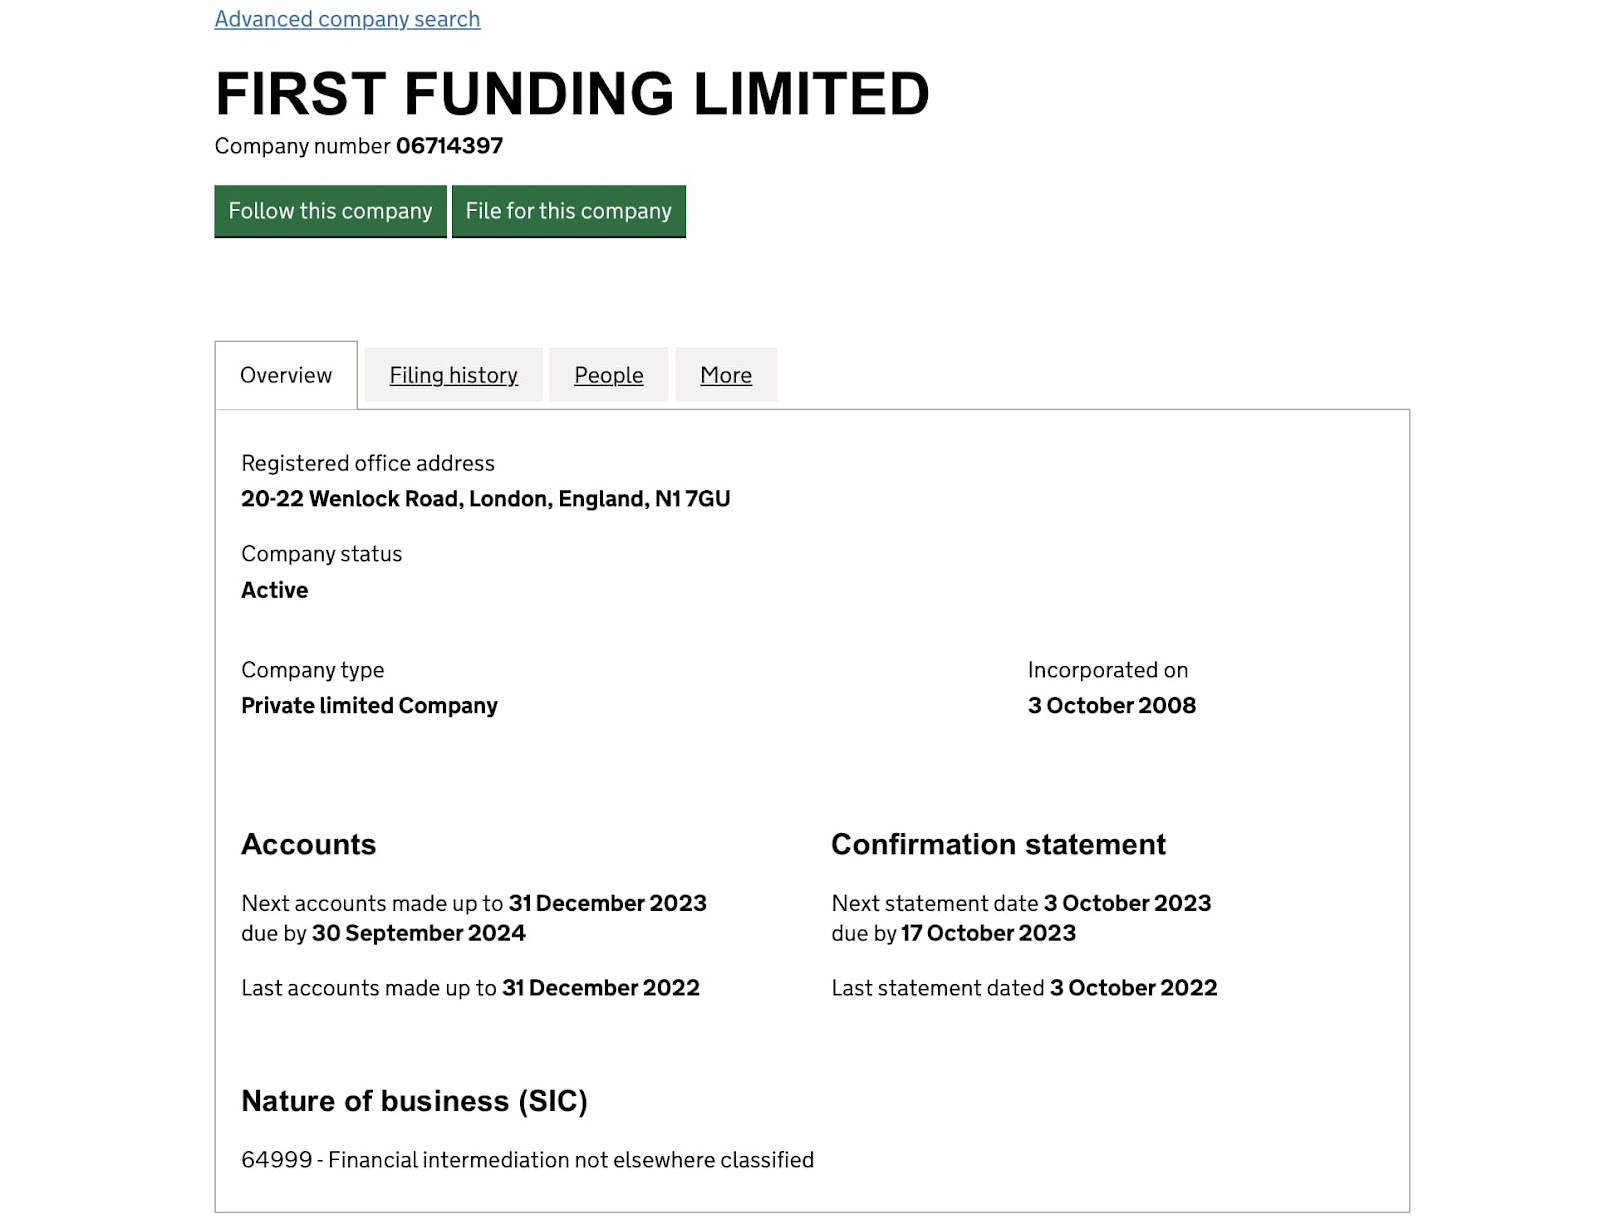 First Funding Limited: отзывы пользователей. Вкладывать или нет?